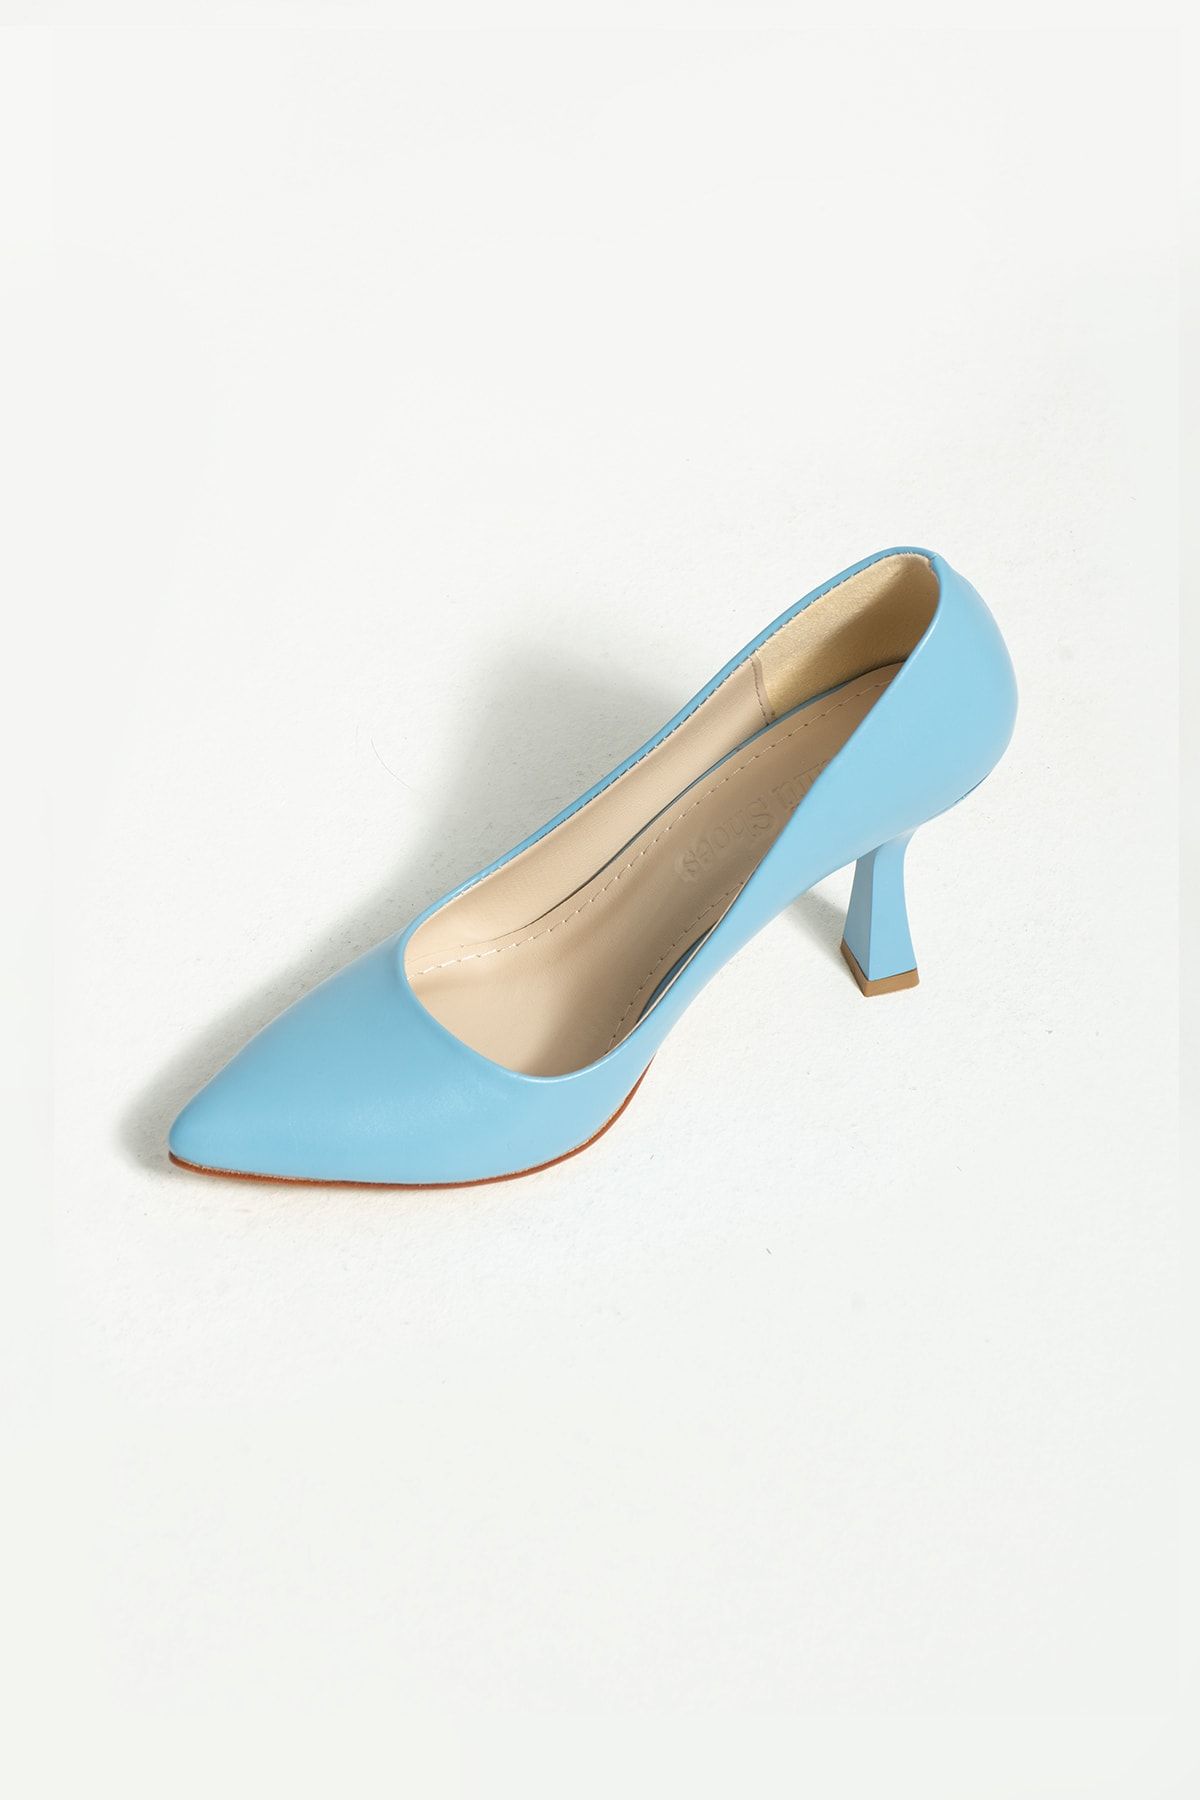 Güllü Shoes Kadın Topuklu Ayakkabı - Yüksek Topuklu Stiletto Rahat Şık Ve Ince Iş Ayakkabısı Mavi 8.5 cm